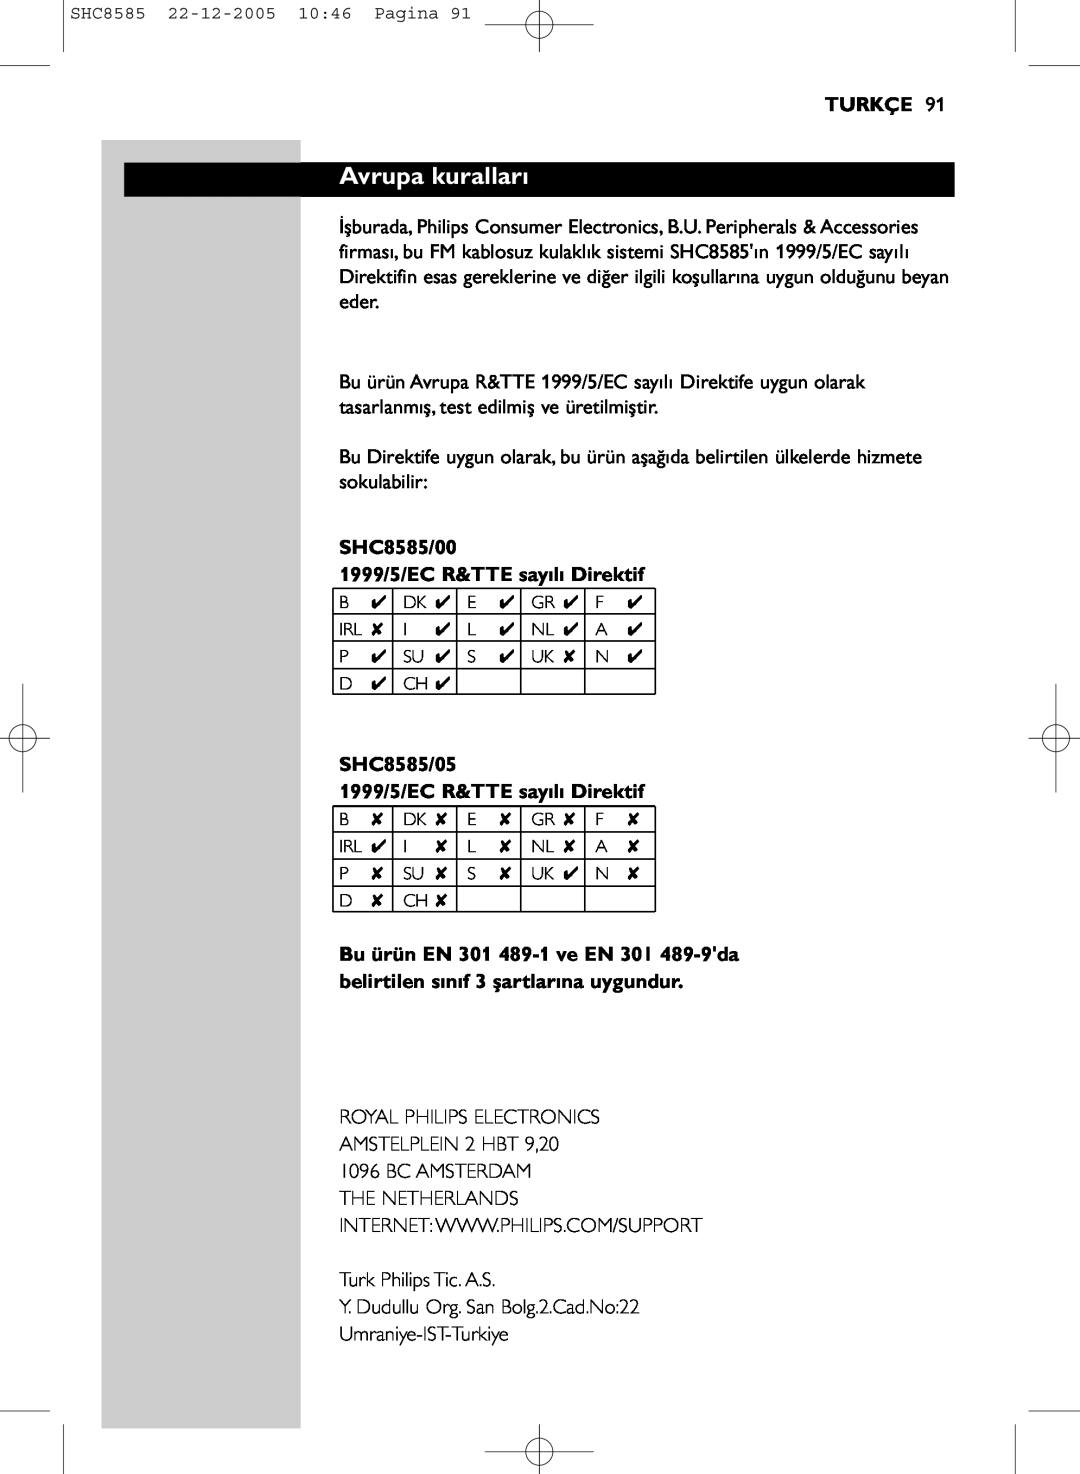 Philips SHC8585/05 manual Avrupa kuralları, Turkçe, SHC8585/00 1999/5/EC R&TTE sayılı Direktif 